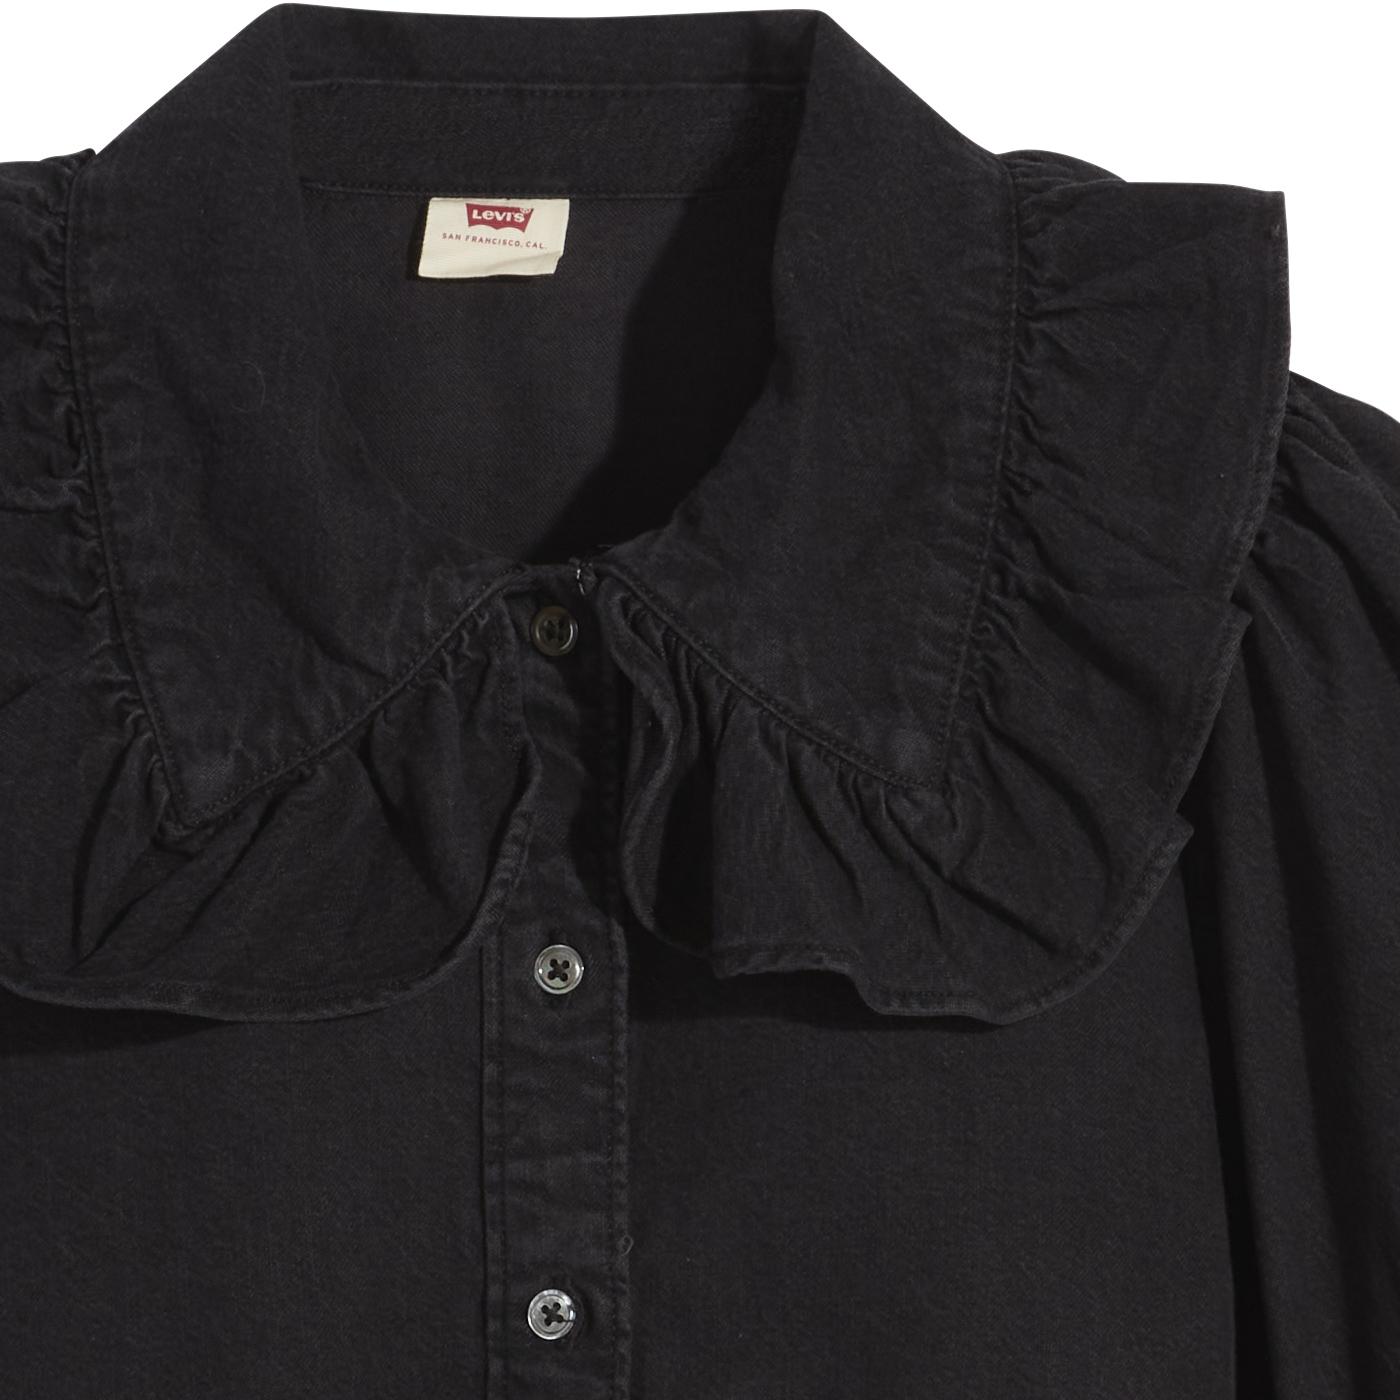 Emilie LEVI'S Retro 70s Frill Collar Shirt in Black Rose